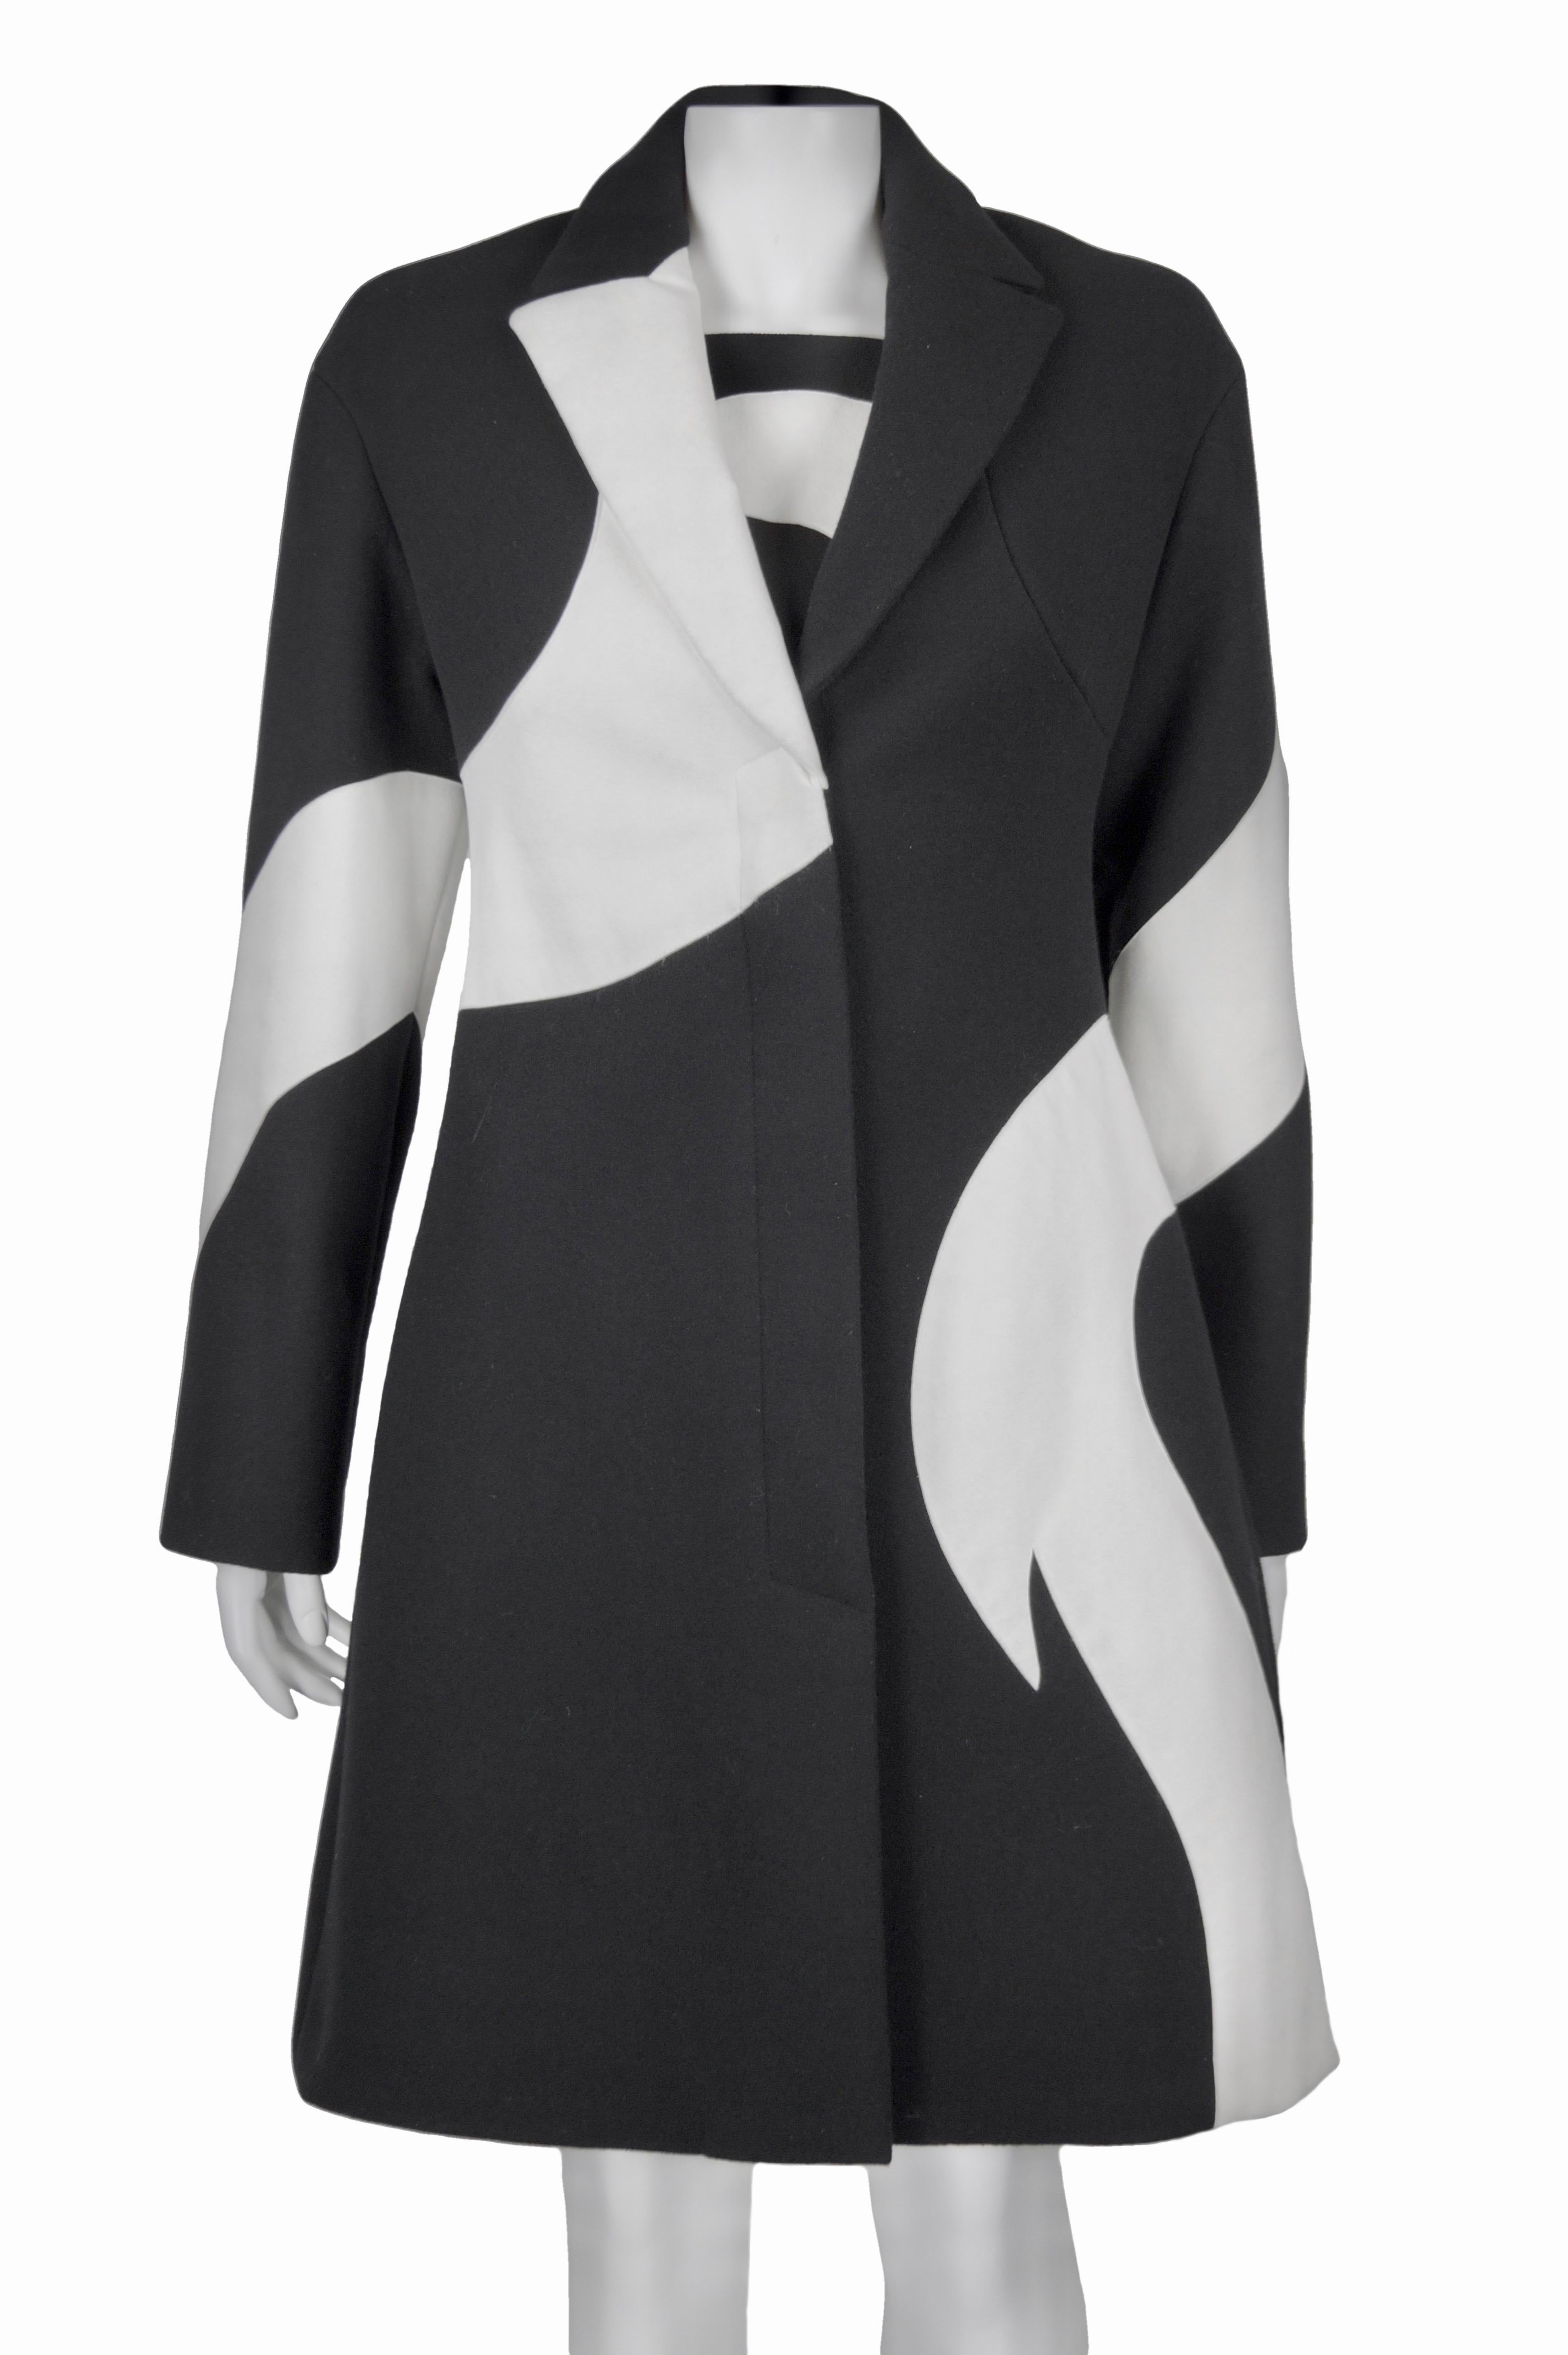 versace herbst kollektion 2011
Schwarz-weißer Mantel und Kleid kombiniert
Größe  IT 40
Hergestellt in Italien
1. Stoff (schwarz): 100% Wolle
2. Stoff (weiß): 68% Polyester 22% Polyurethan, sieht aus wie Wildleder, ist aber kein Leder. Es ist